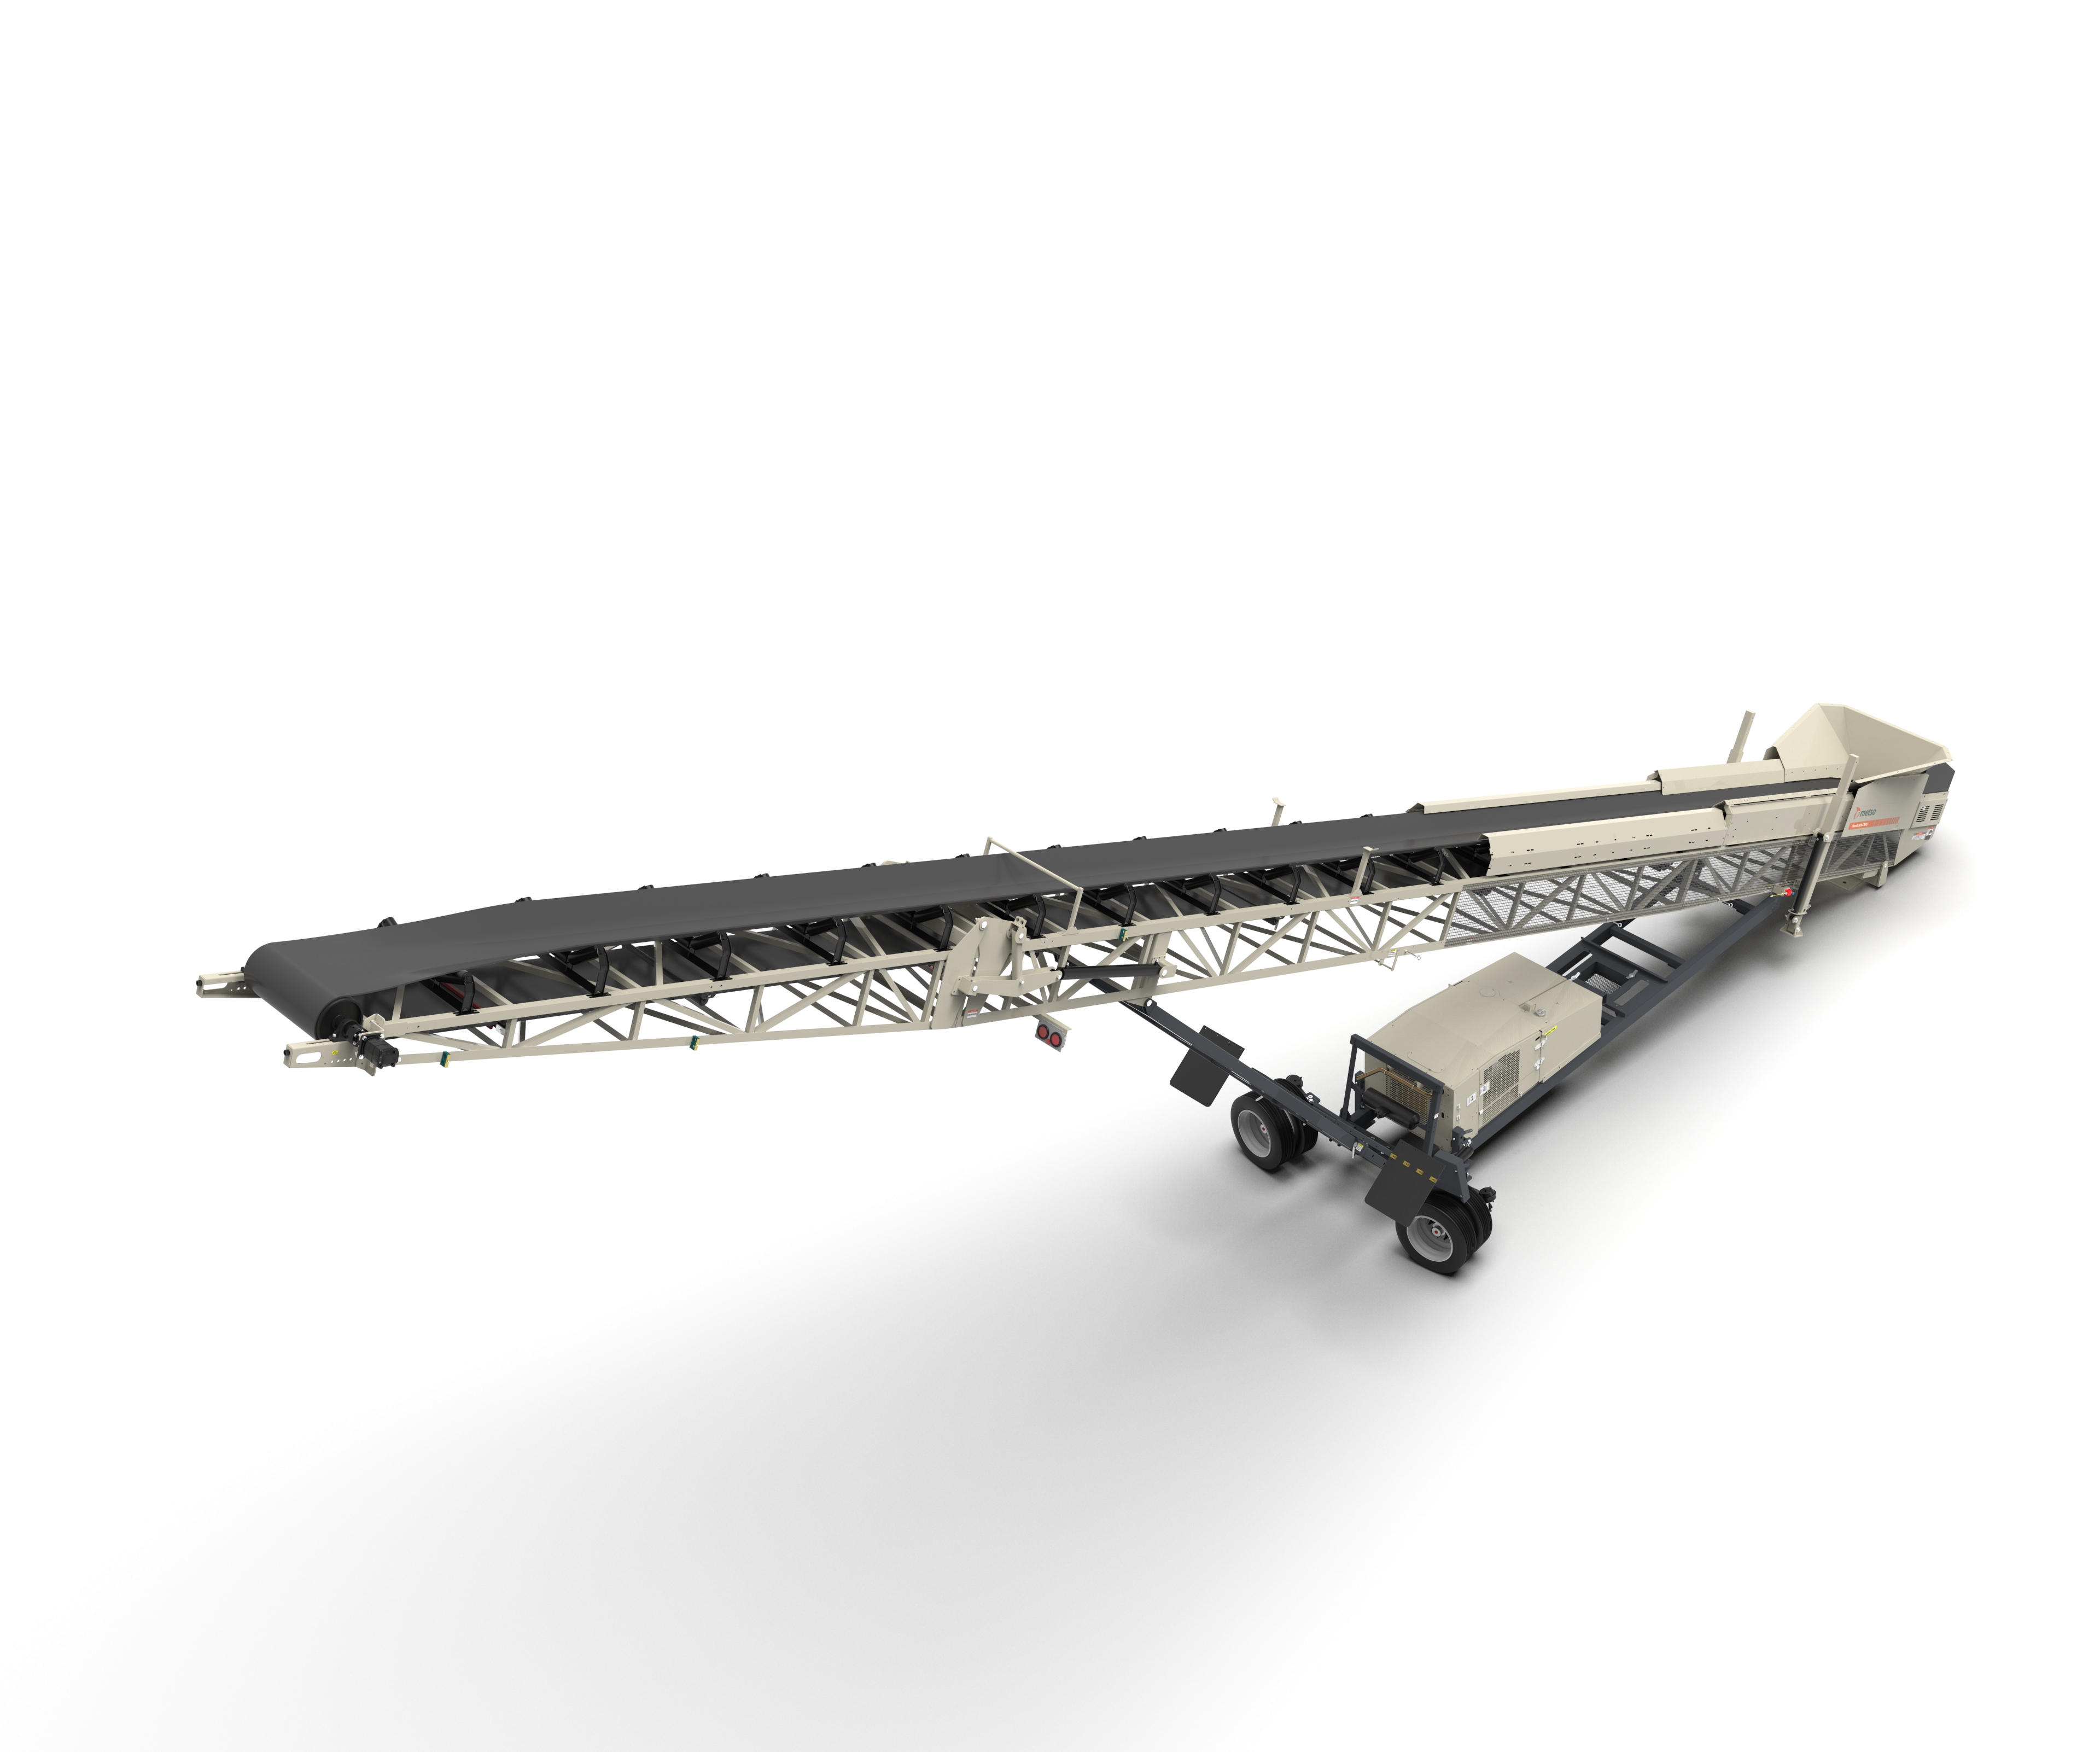 Imagen 3D del transportador móvil Nordtrack™ CW85. 